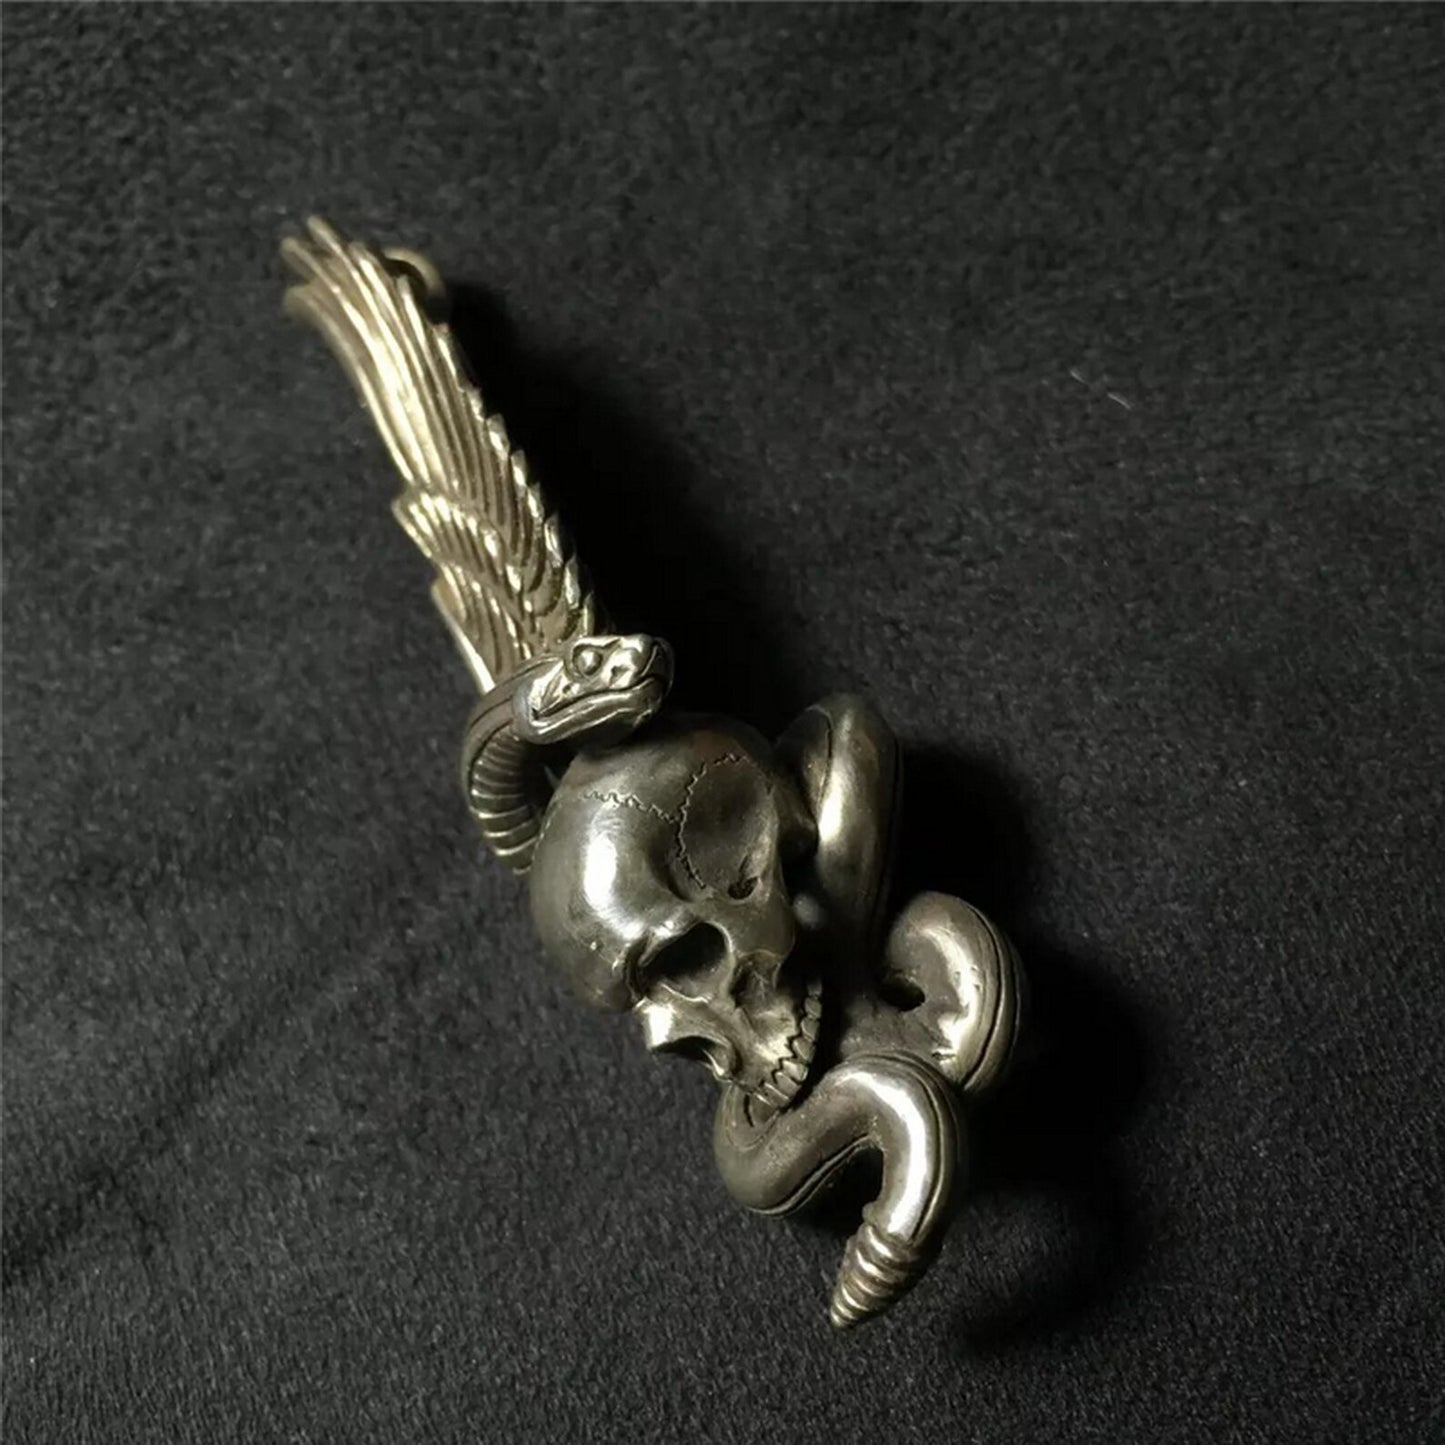 Skull and Snake Fallen Angel Wing Pendant